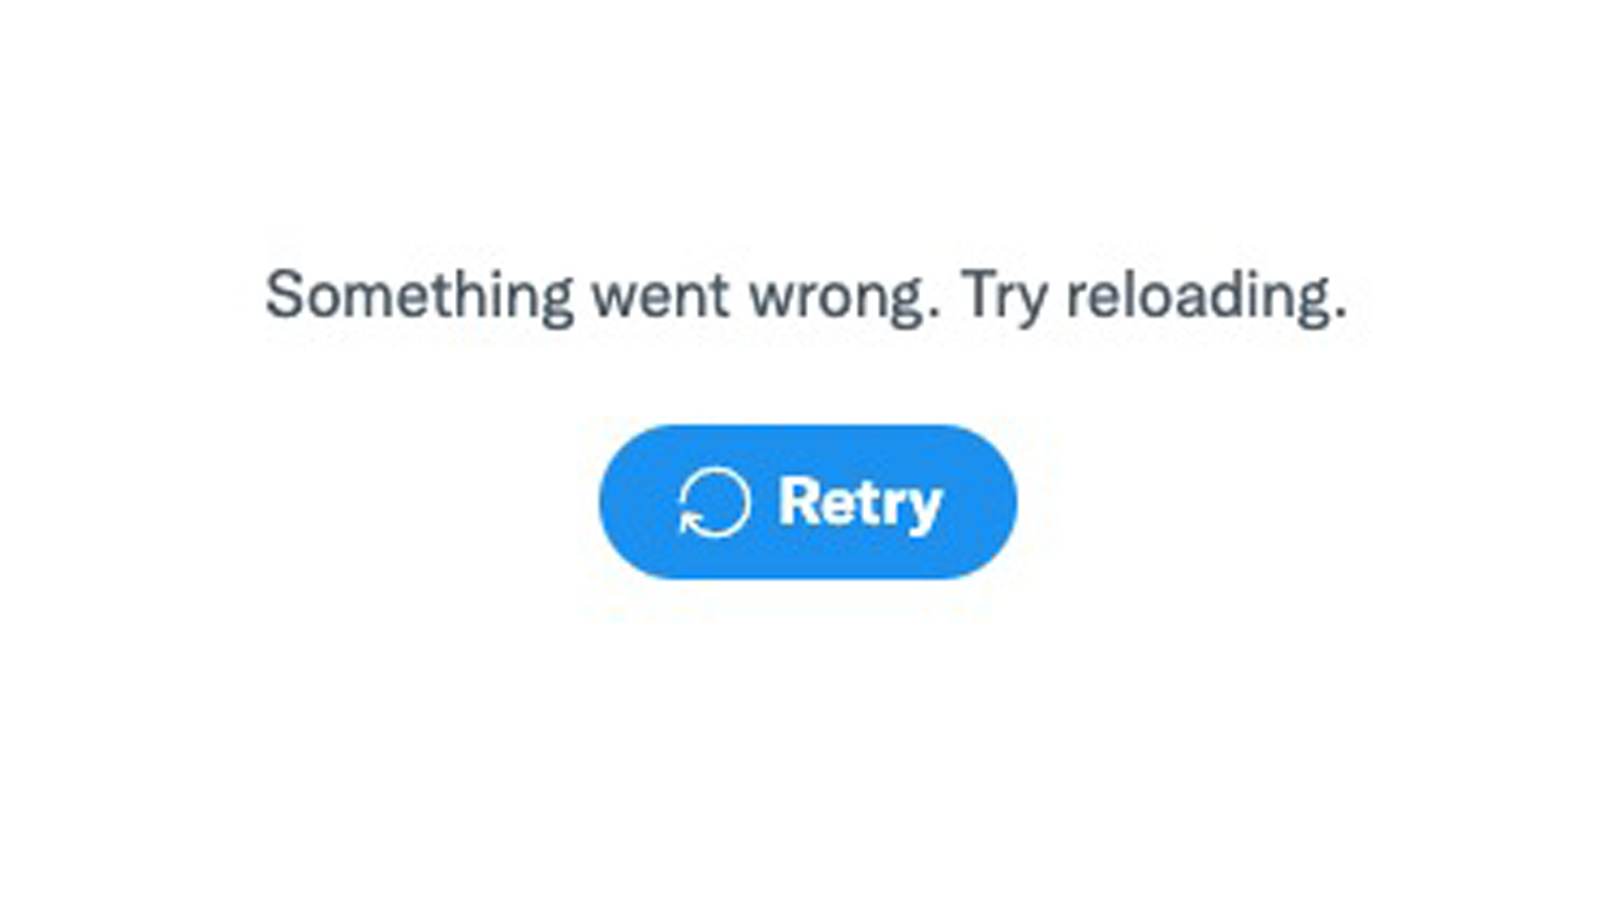 An error message from Twitter